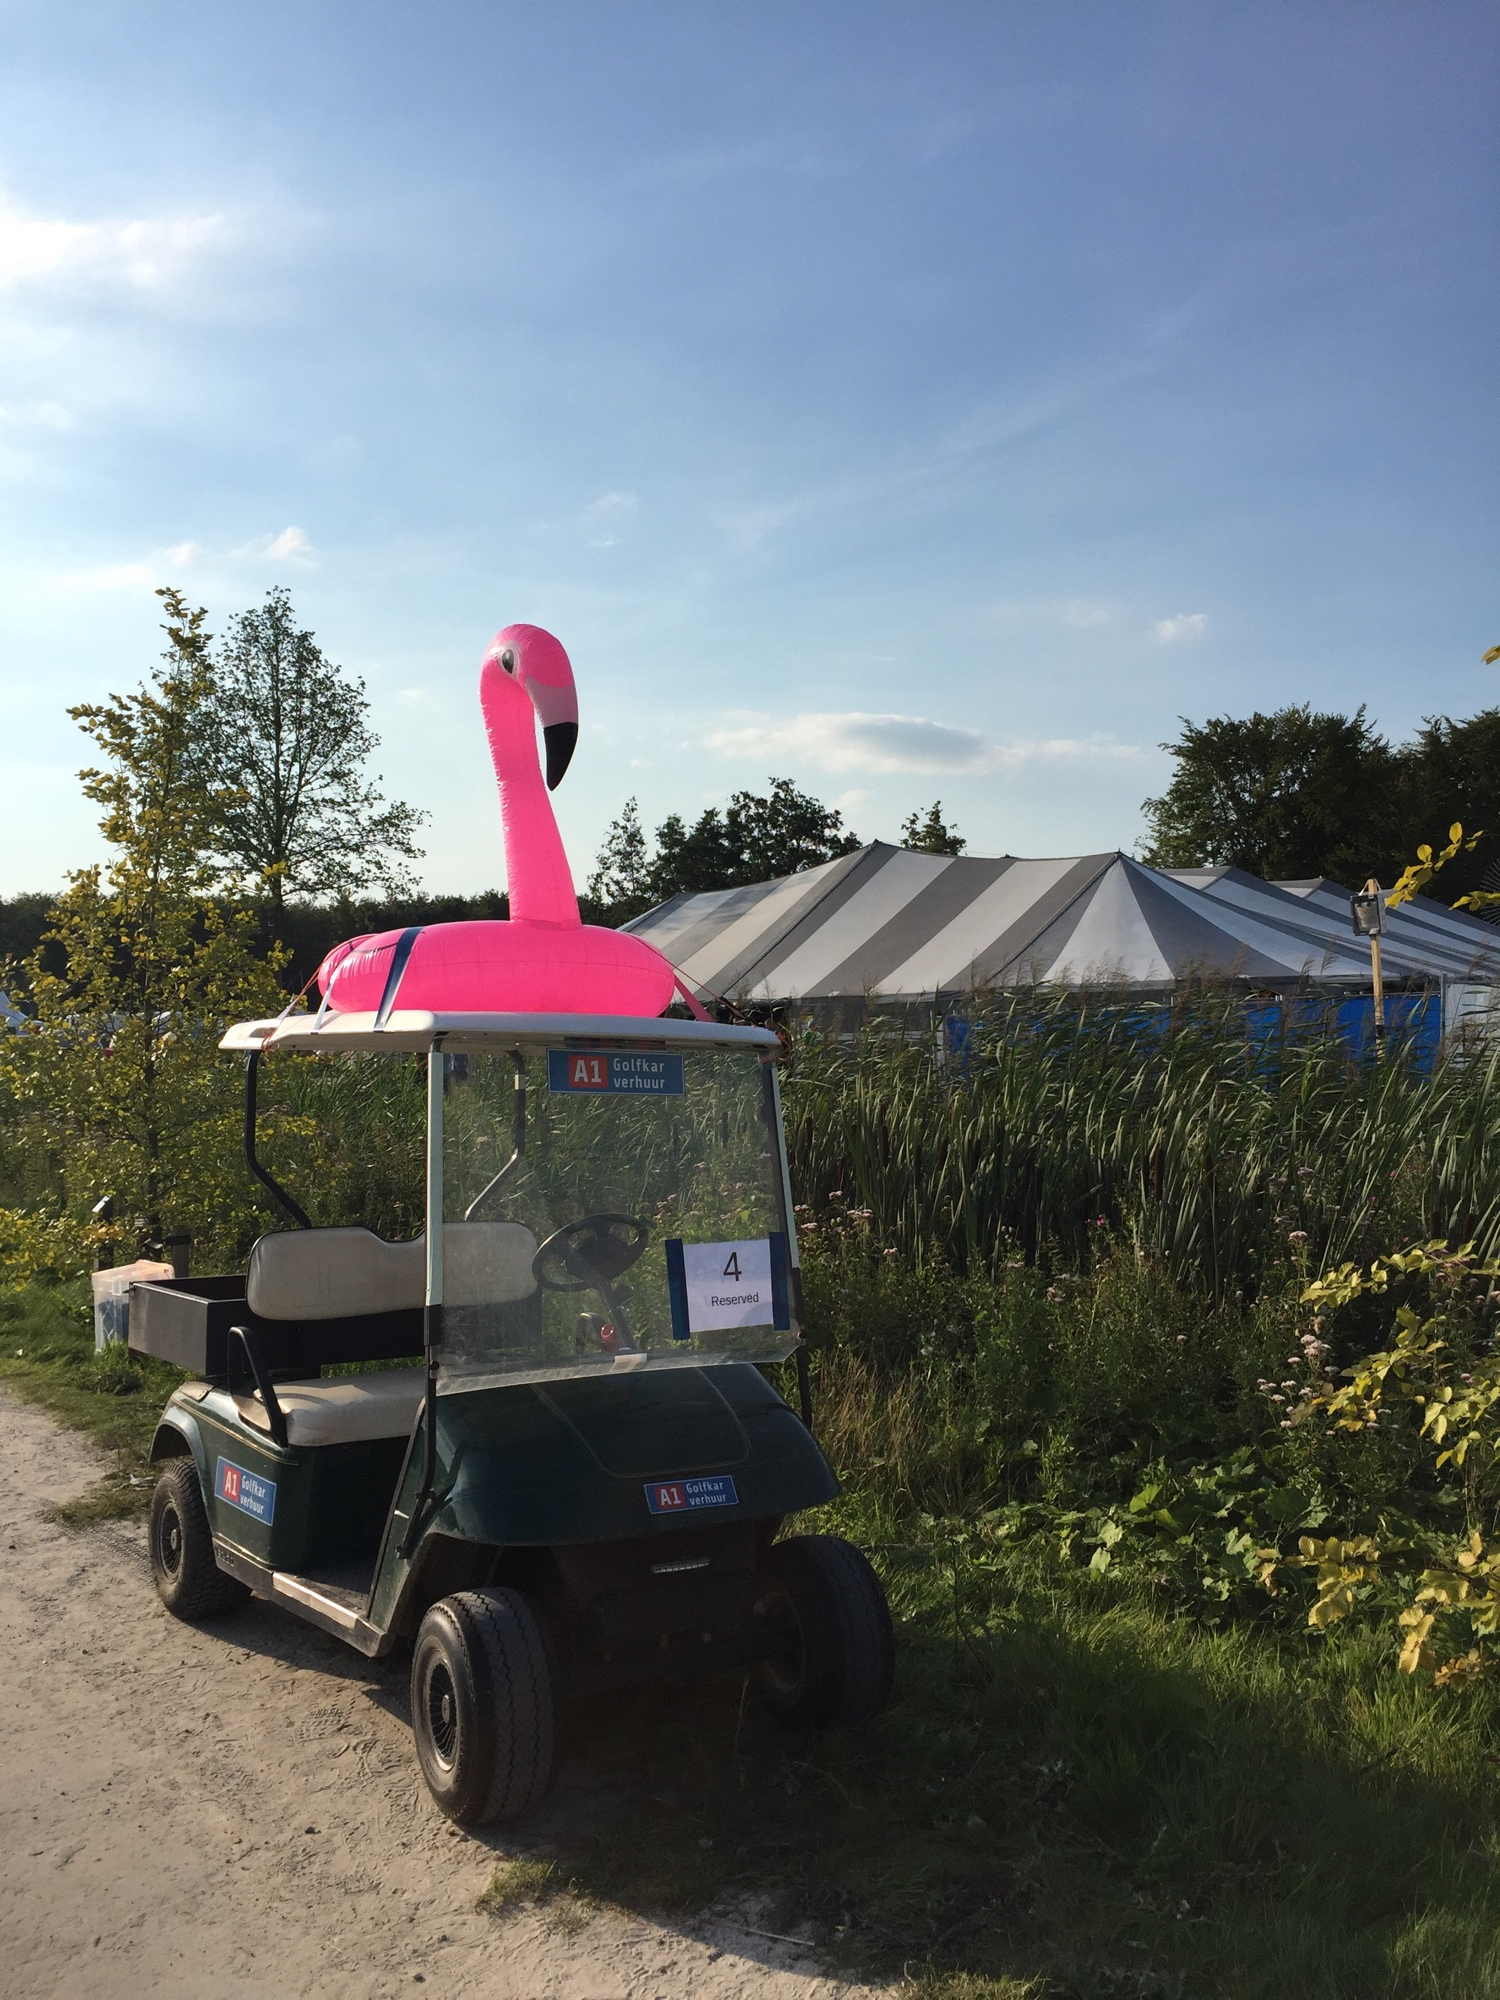 Golf Cart geschmückt mit einem aufblasbaren Flamingo